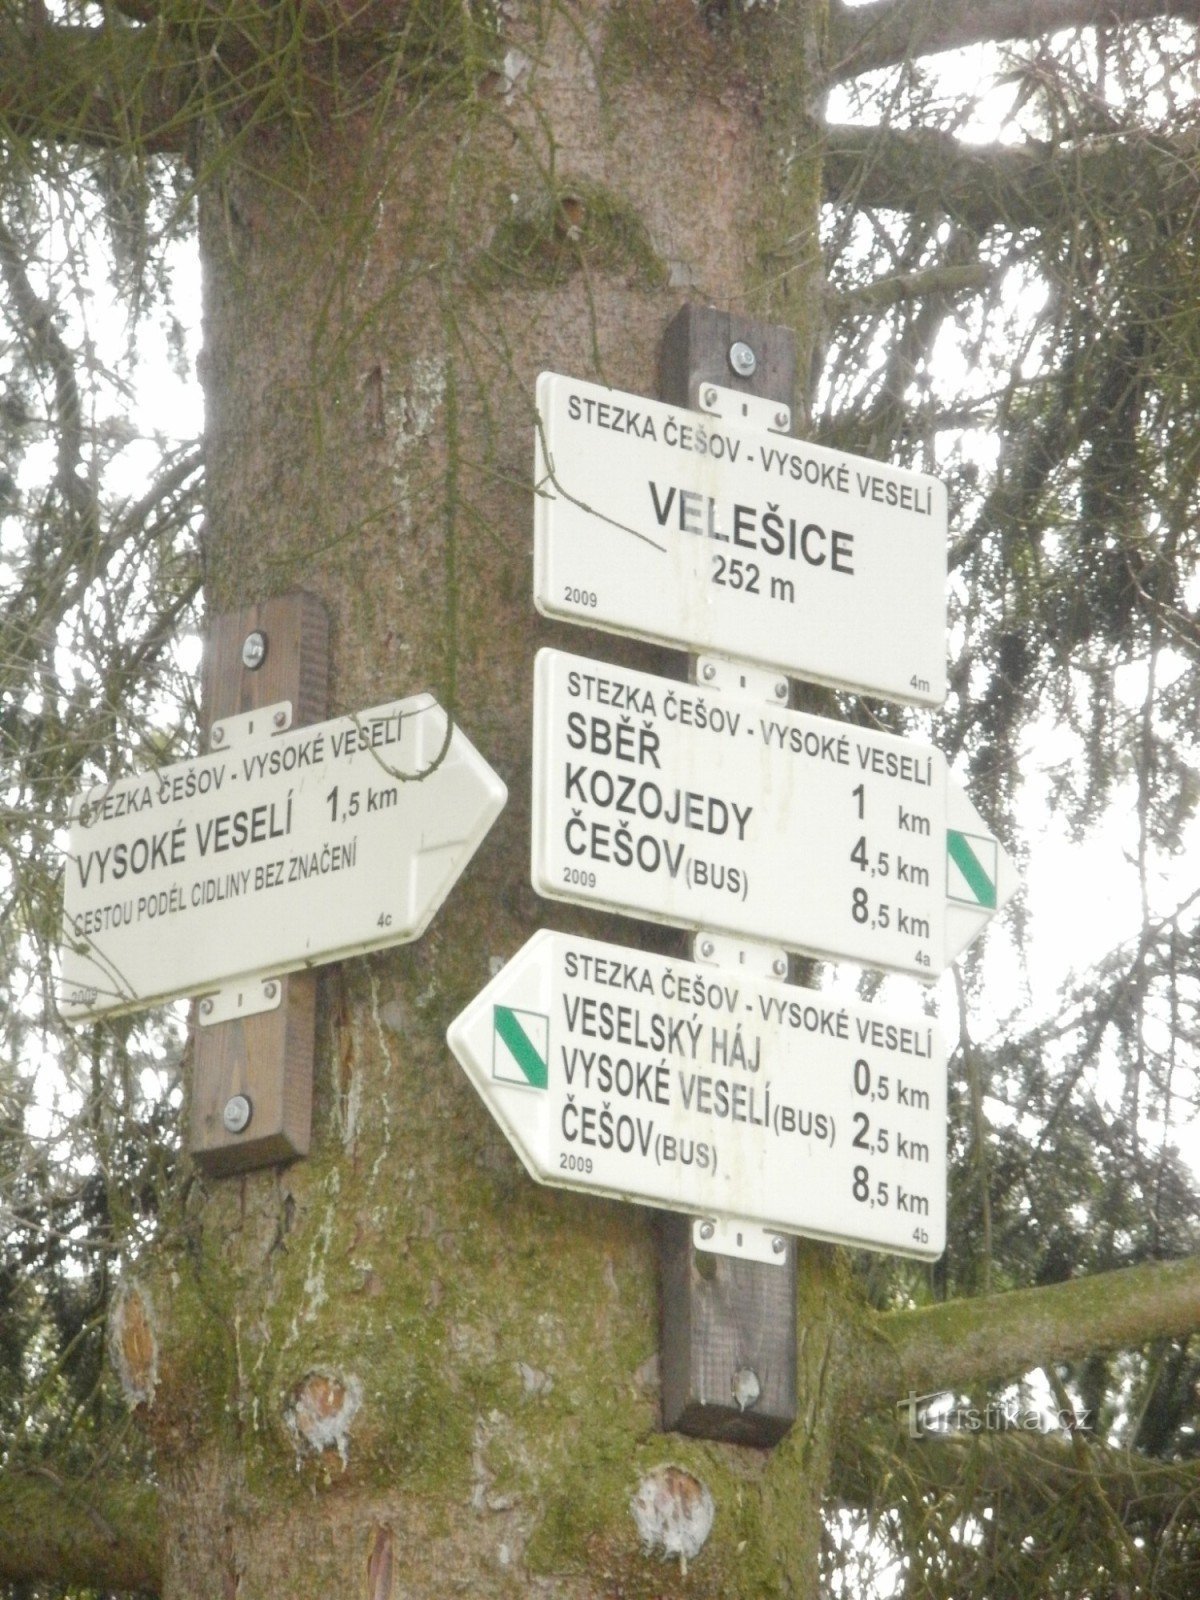 intersecția NS Češov-Vysoké Veselí - Velešice